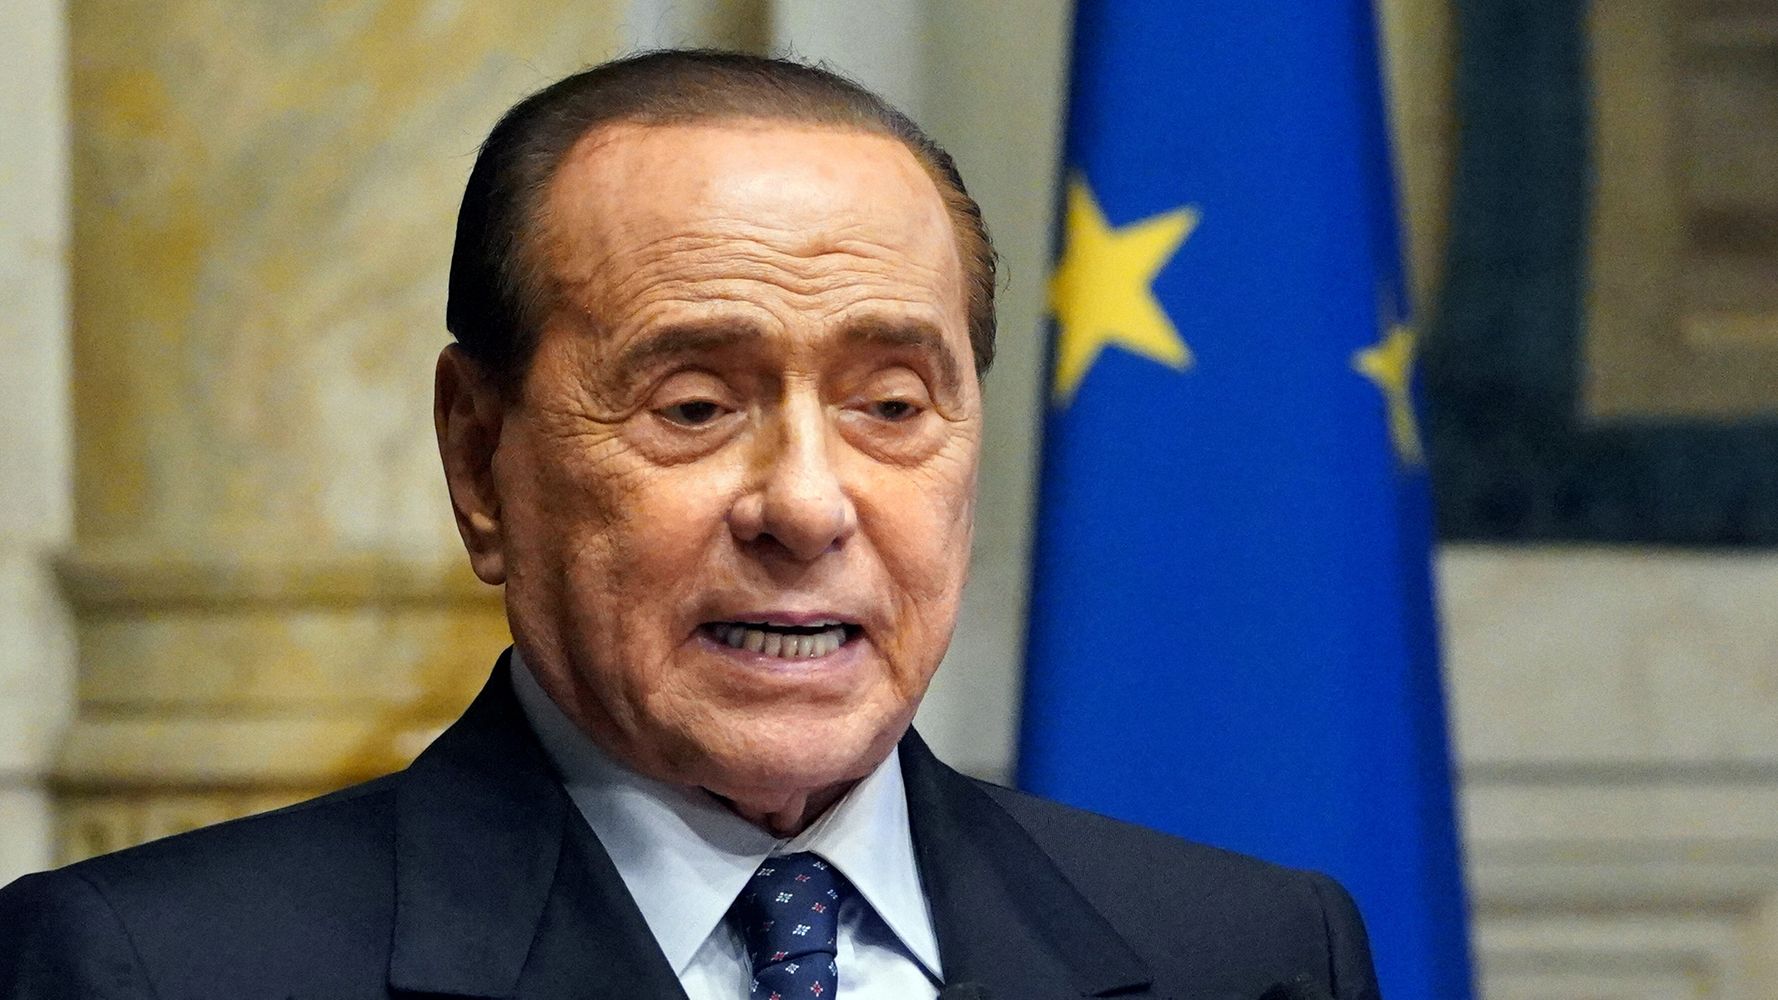 Le chance di Silvio Berlusconi di ascendere al Colle più alto aumentano a vista d’occhio, di giorno in giorno